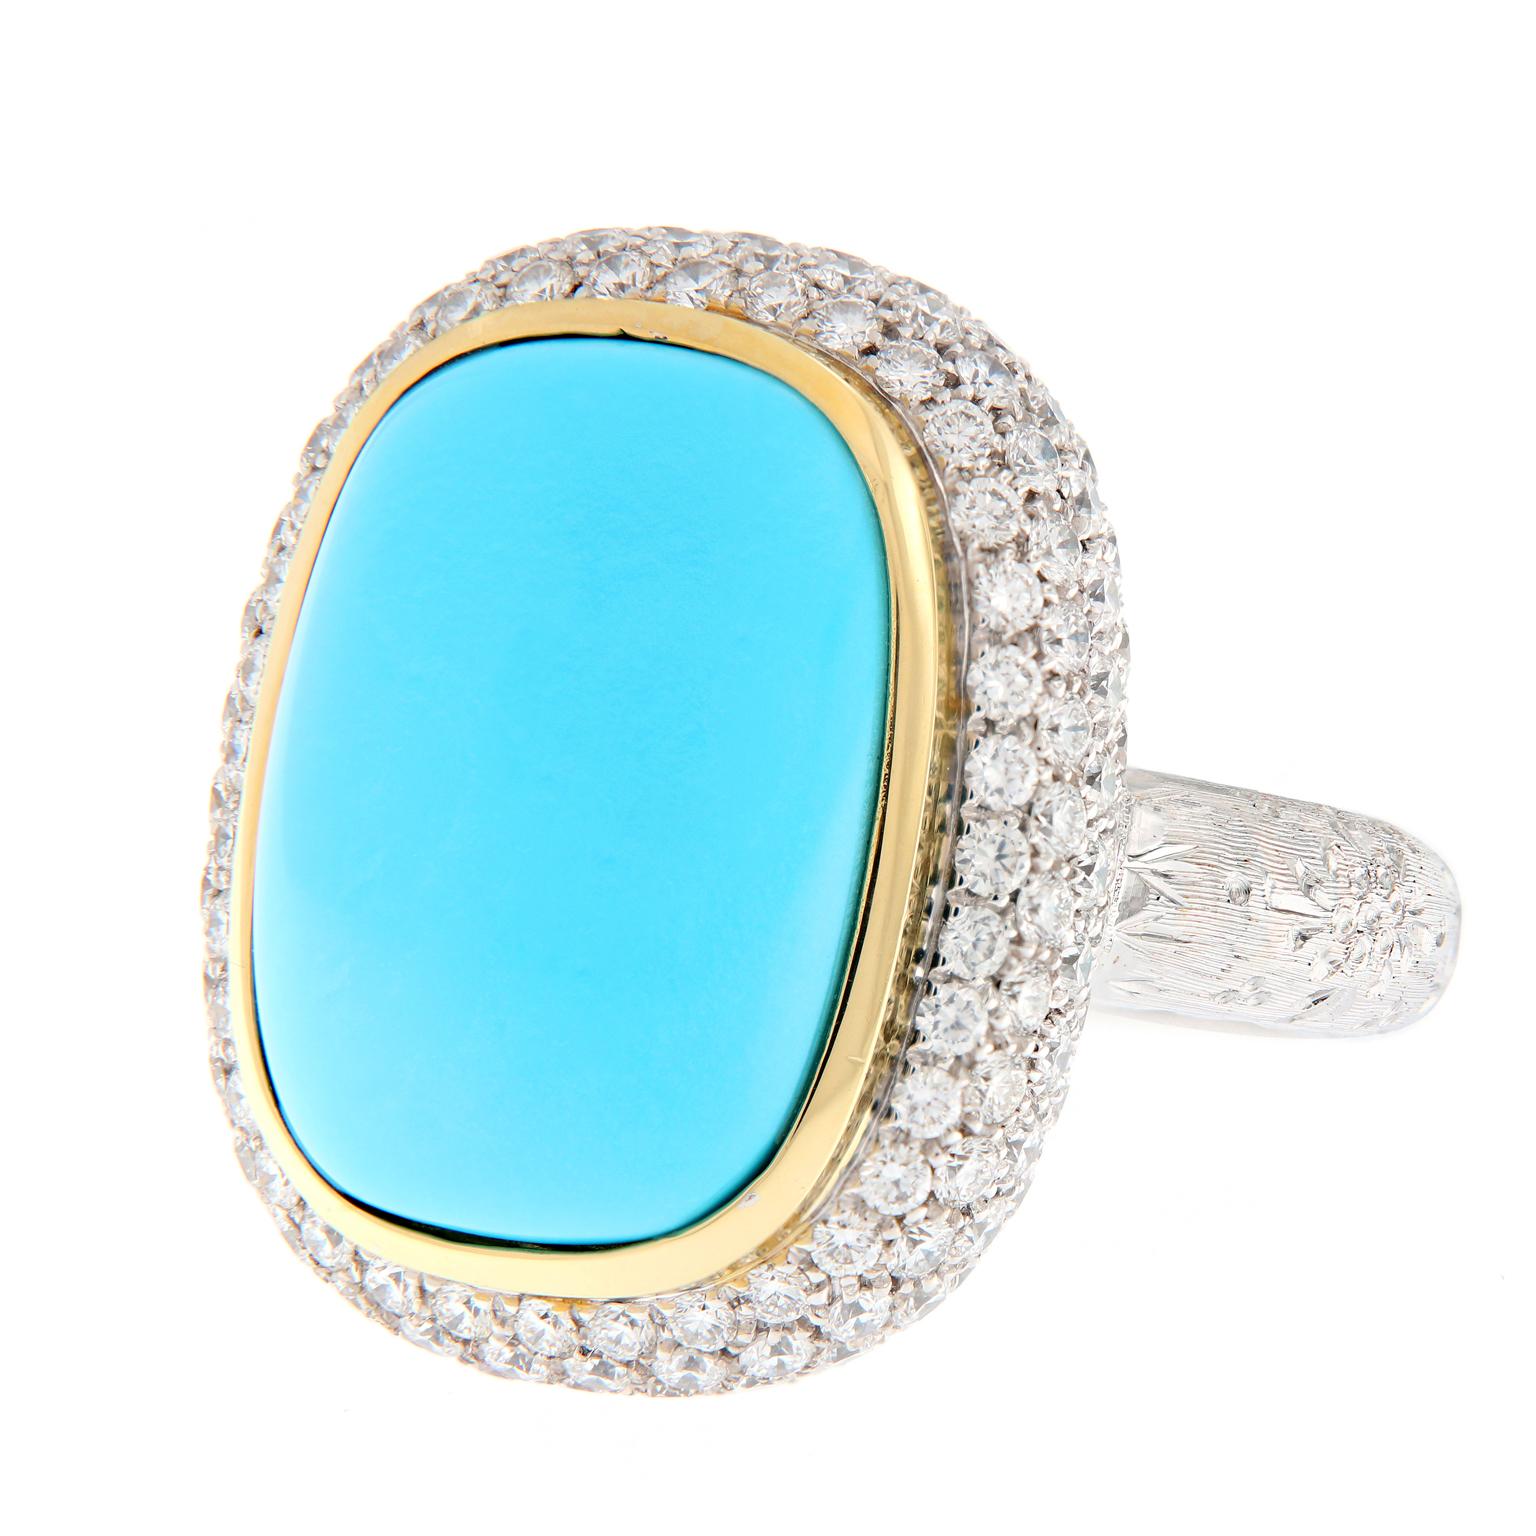 For Kyriaki: Teri Turquoise Diamond Gold Cocktail Ring